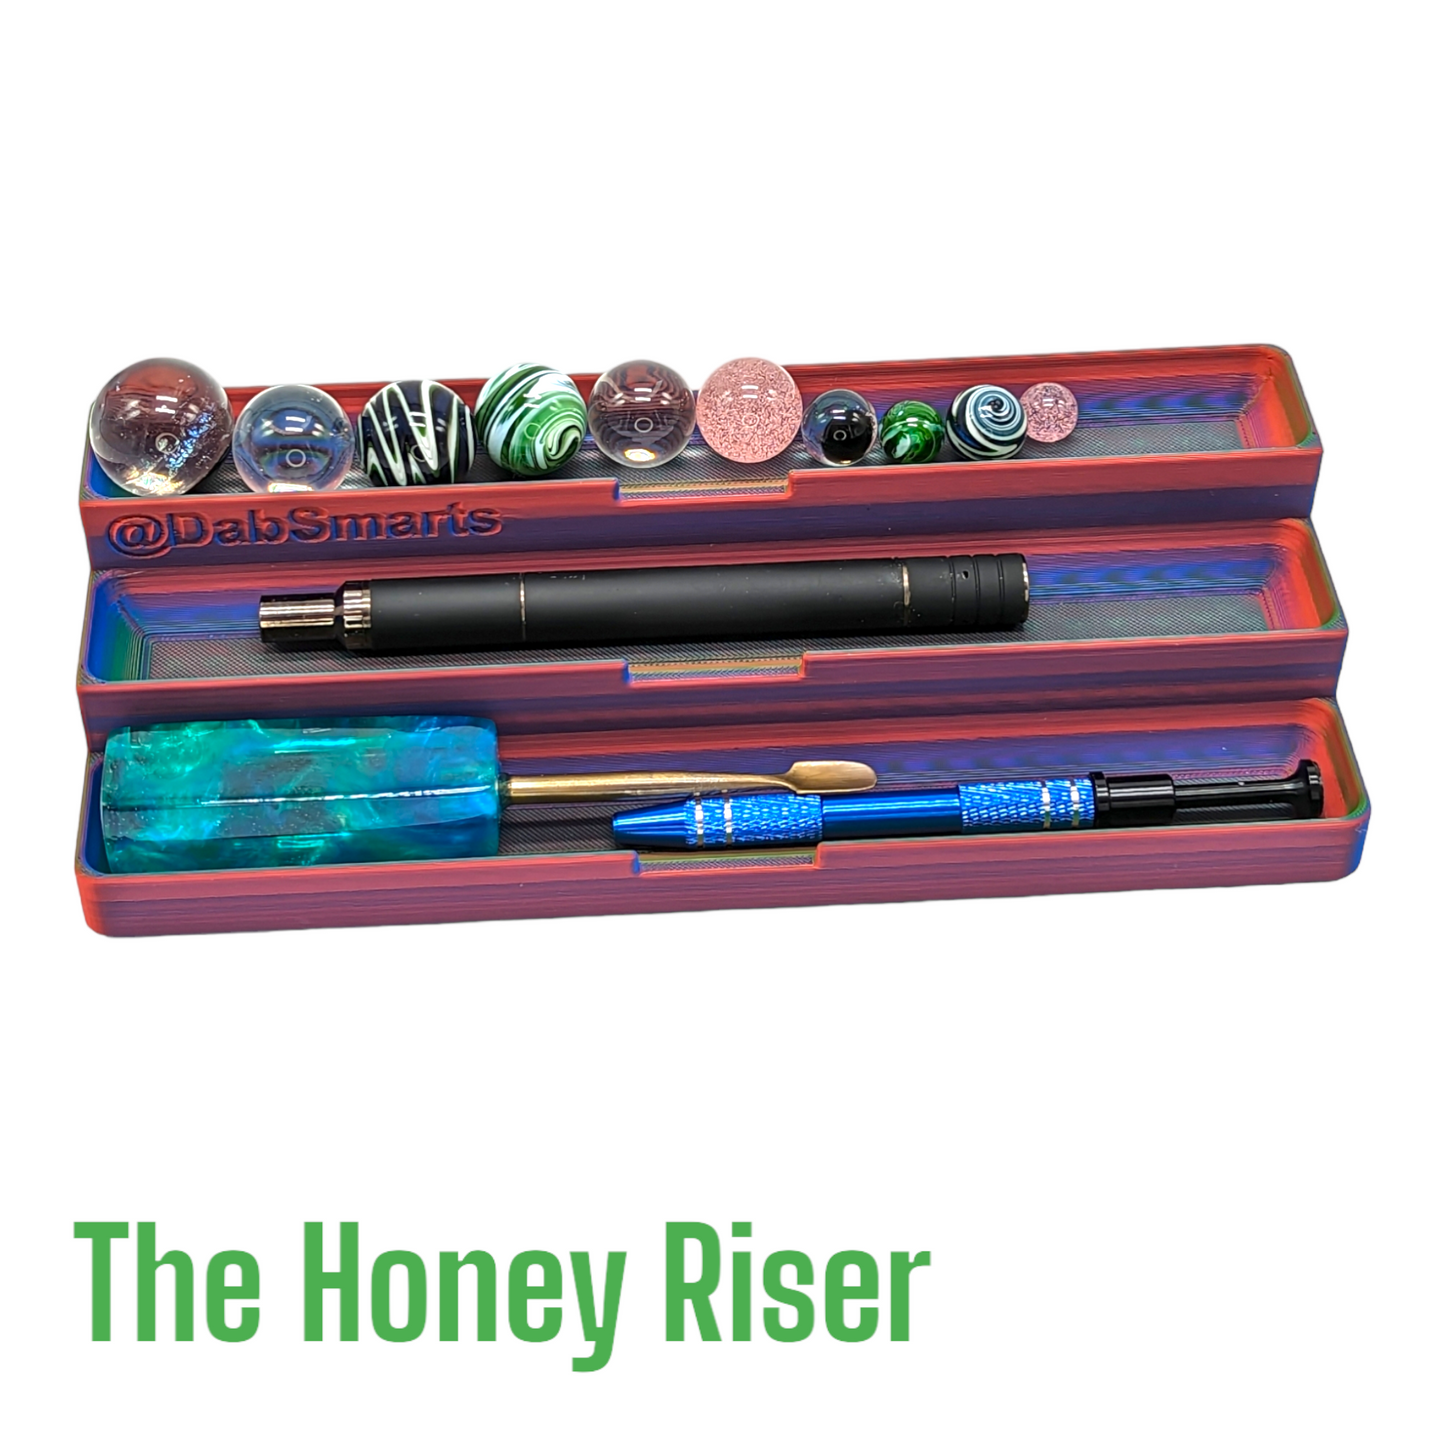 The Honey Riser